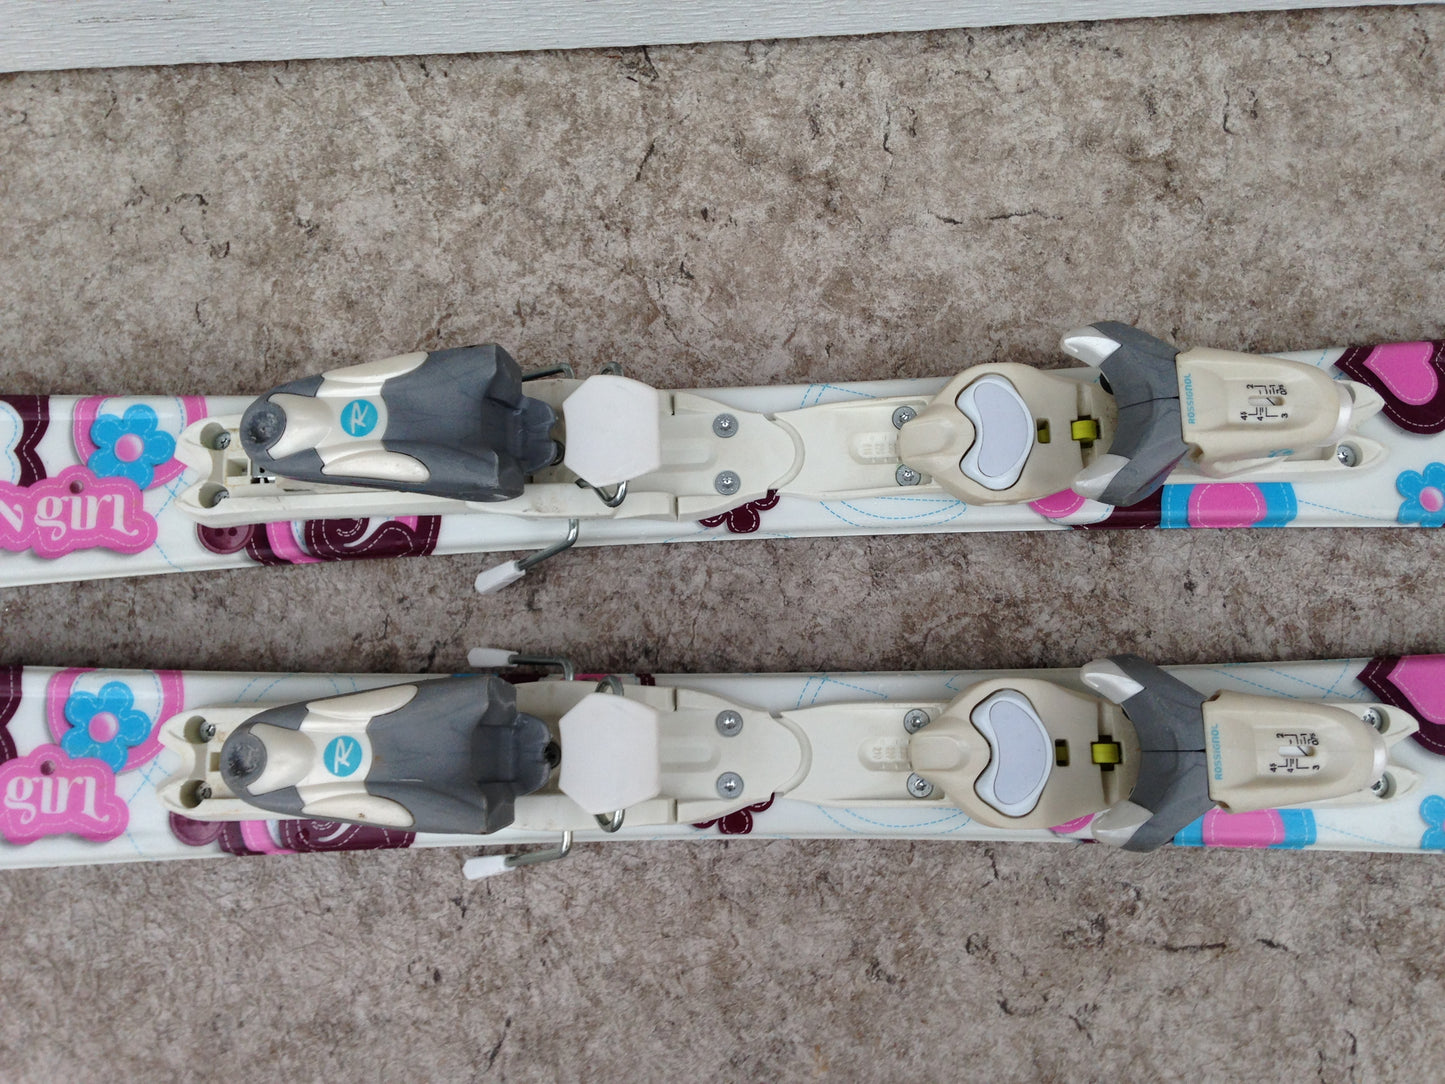 Ski 100 Rossignol Fun Girl Parabolic White Pink Blue With Bindings